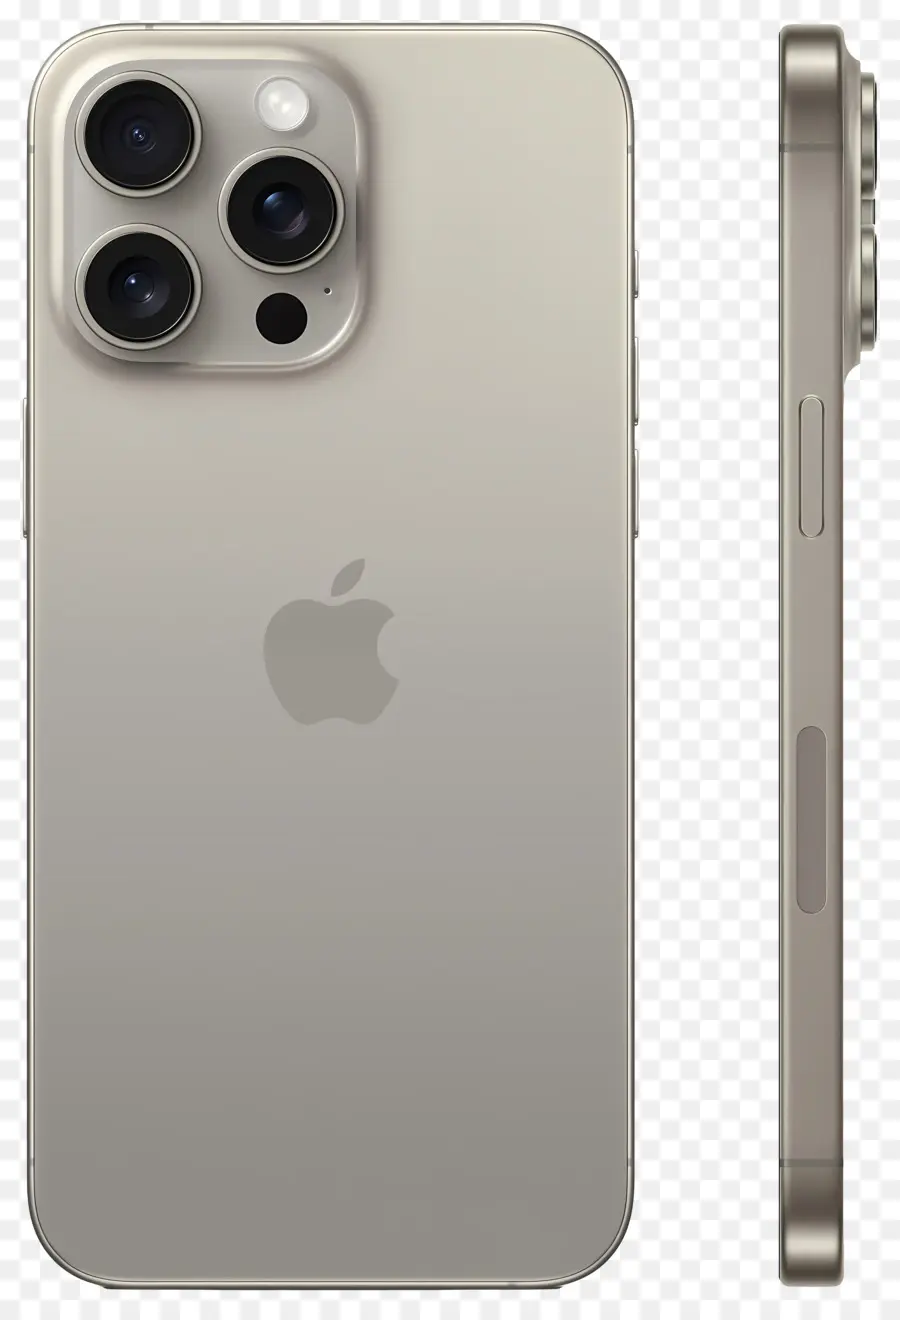 obiettivo della fotocamera - iPhone 11 pro max con obiettivo grande fotocamera